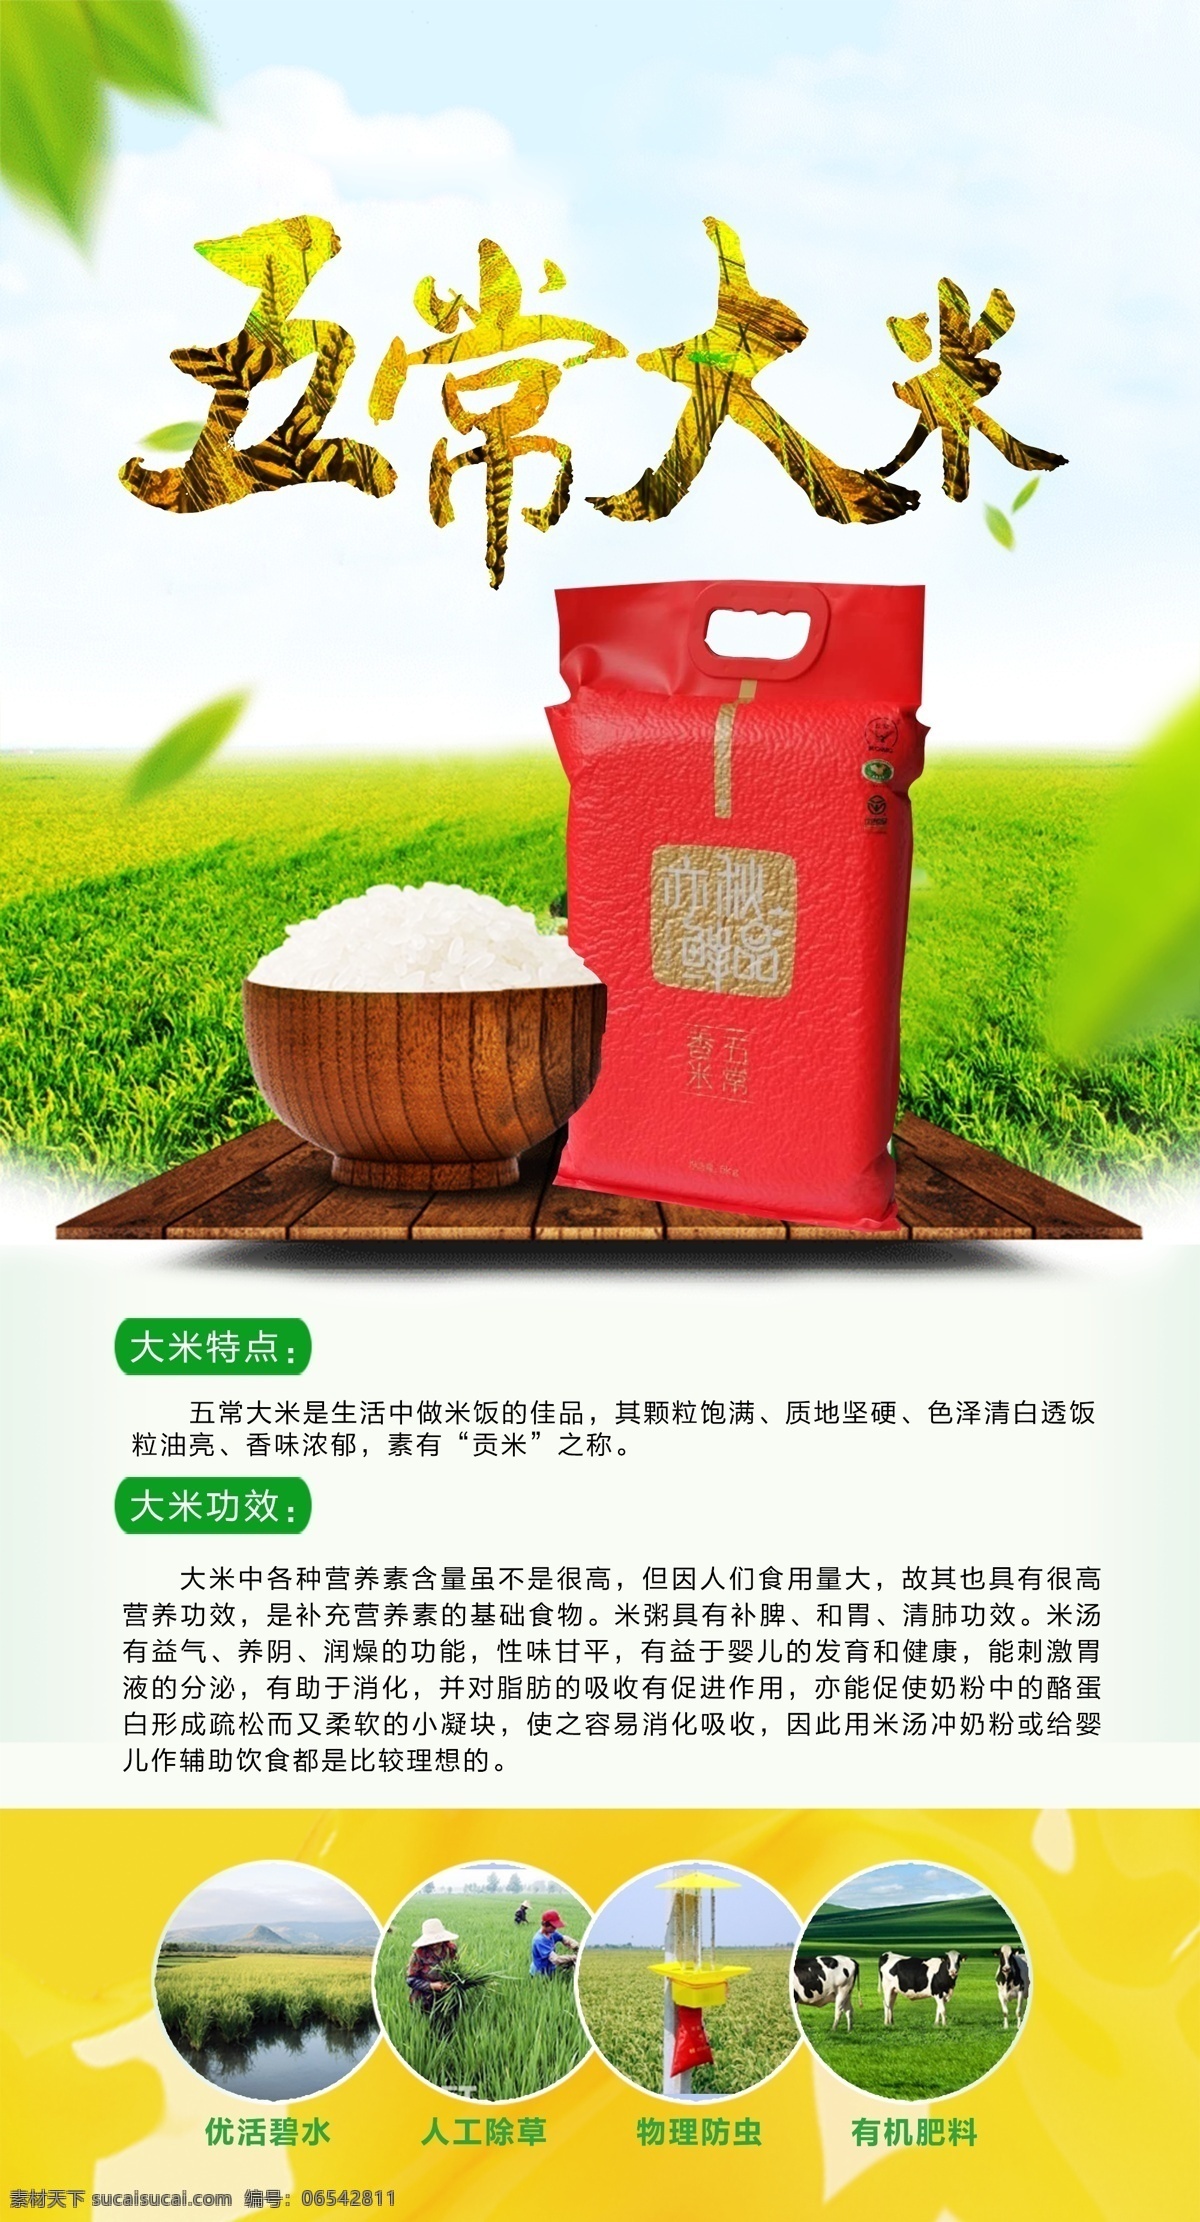 五常大米海报 大米 五常大米 海报 大米功效 优点 稻田 分层